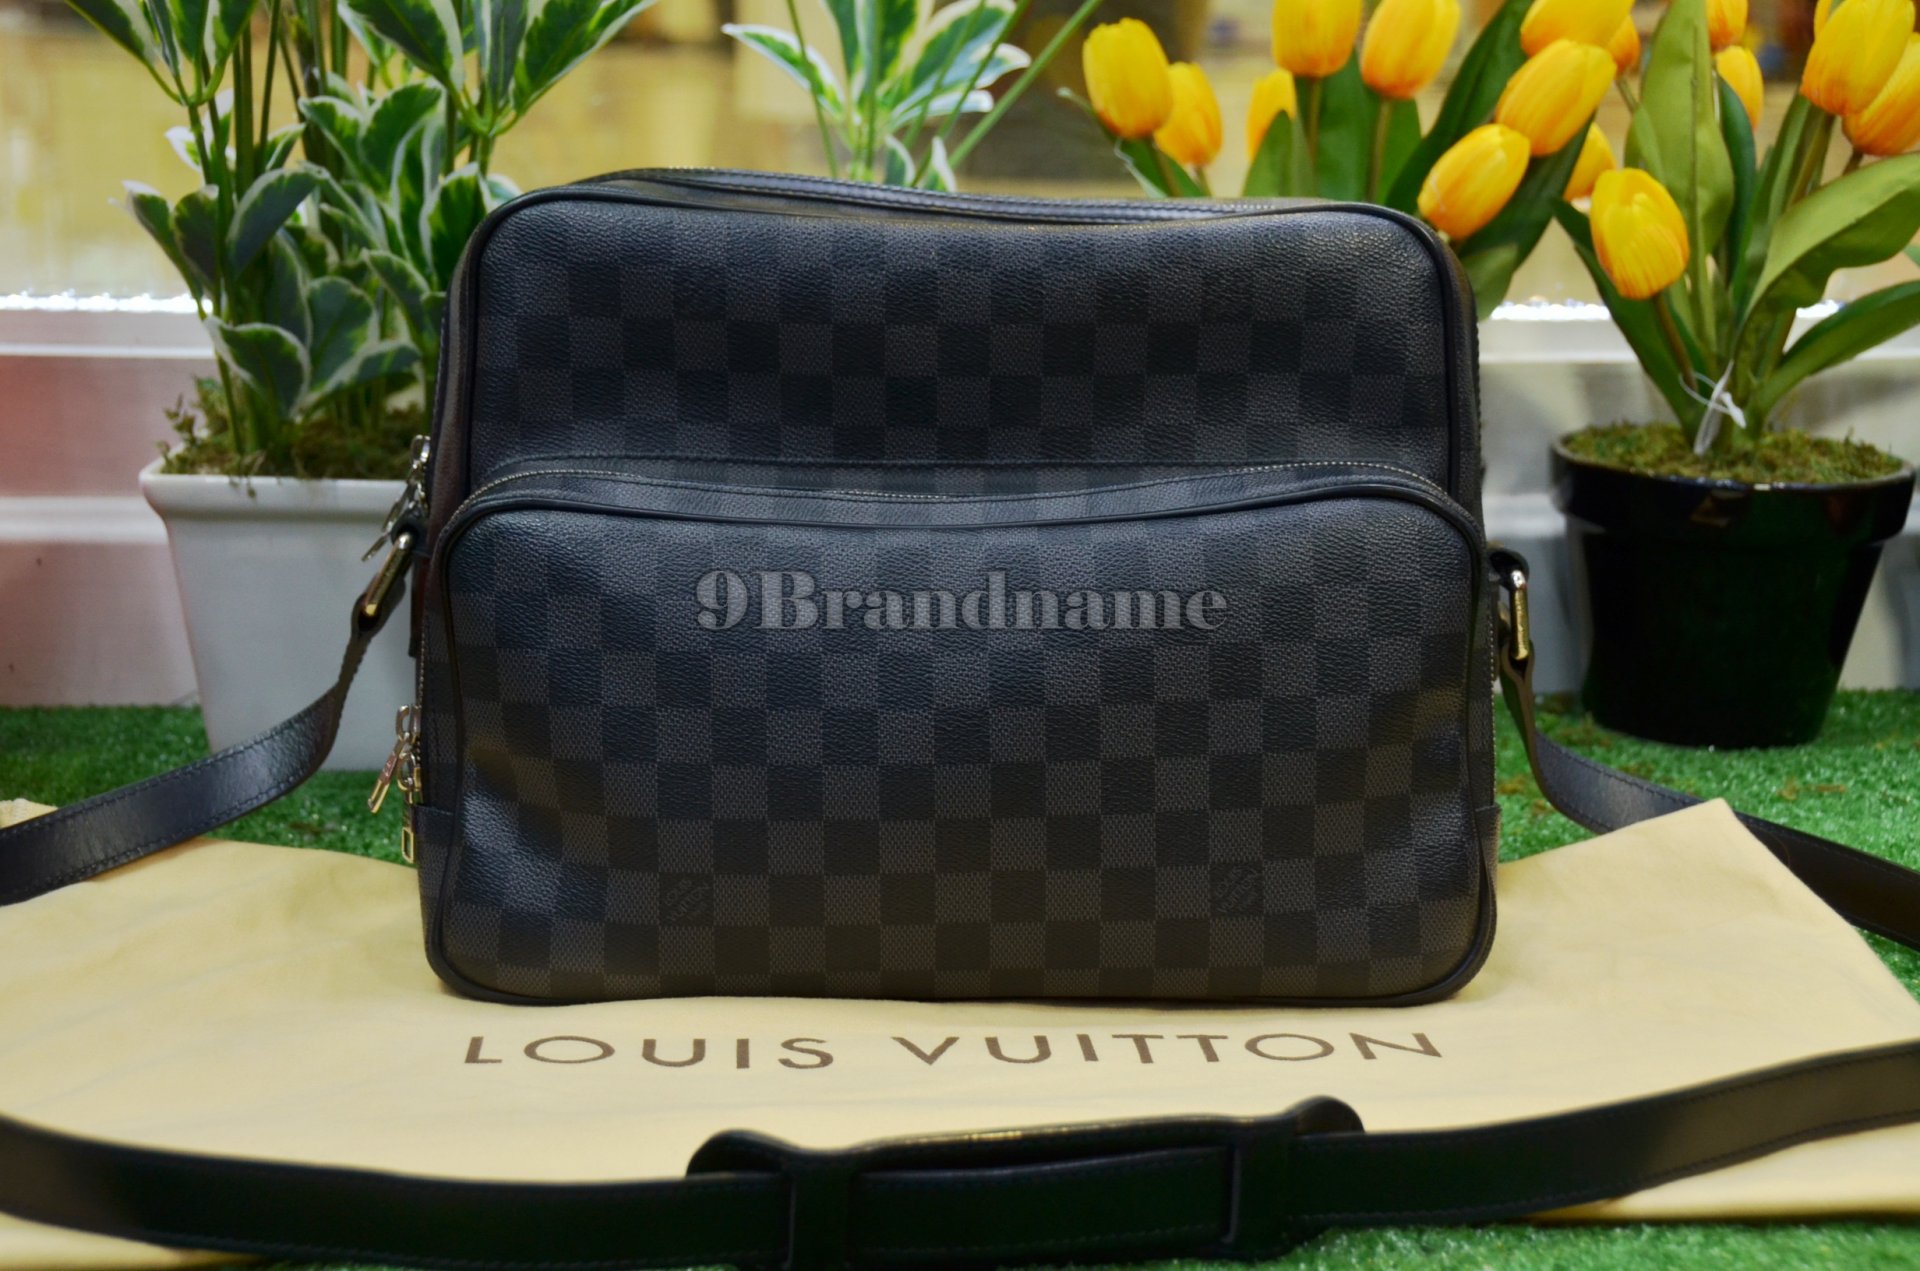 Louis Vuitton Leoh Gaphite - Used Authentic Bag กระเป๋าสะพายข้าง สำหรับผู้ชาย สามาถรปรับสายสั้นยาวได้ ของแท้มือสอง สภาพดีค่ะ